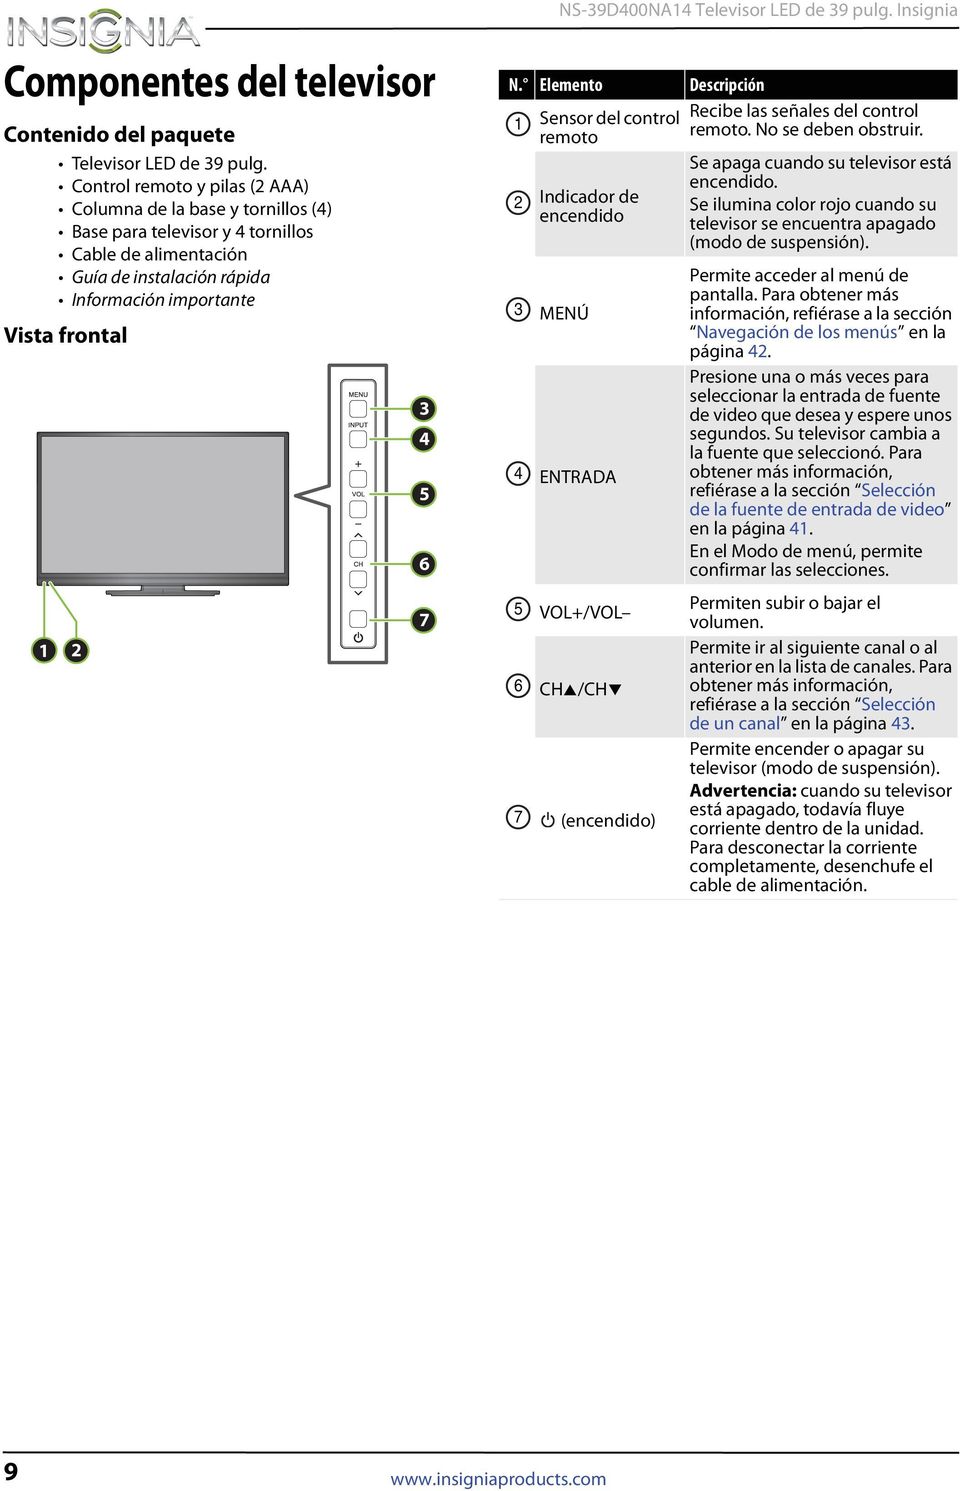 Elemento Descripción 1 2 3 4 5 6 7 Sensor del control remoto Indicador de encendido MENÚ ENTRADA VOL+/VOL CH /CH (encendido) Recibe las señales del control remoto. No se deben obstruir.